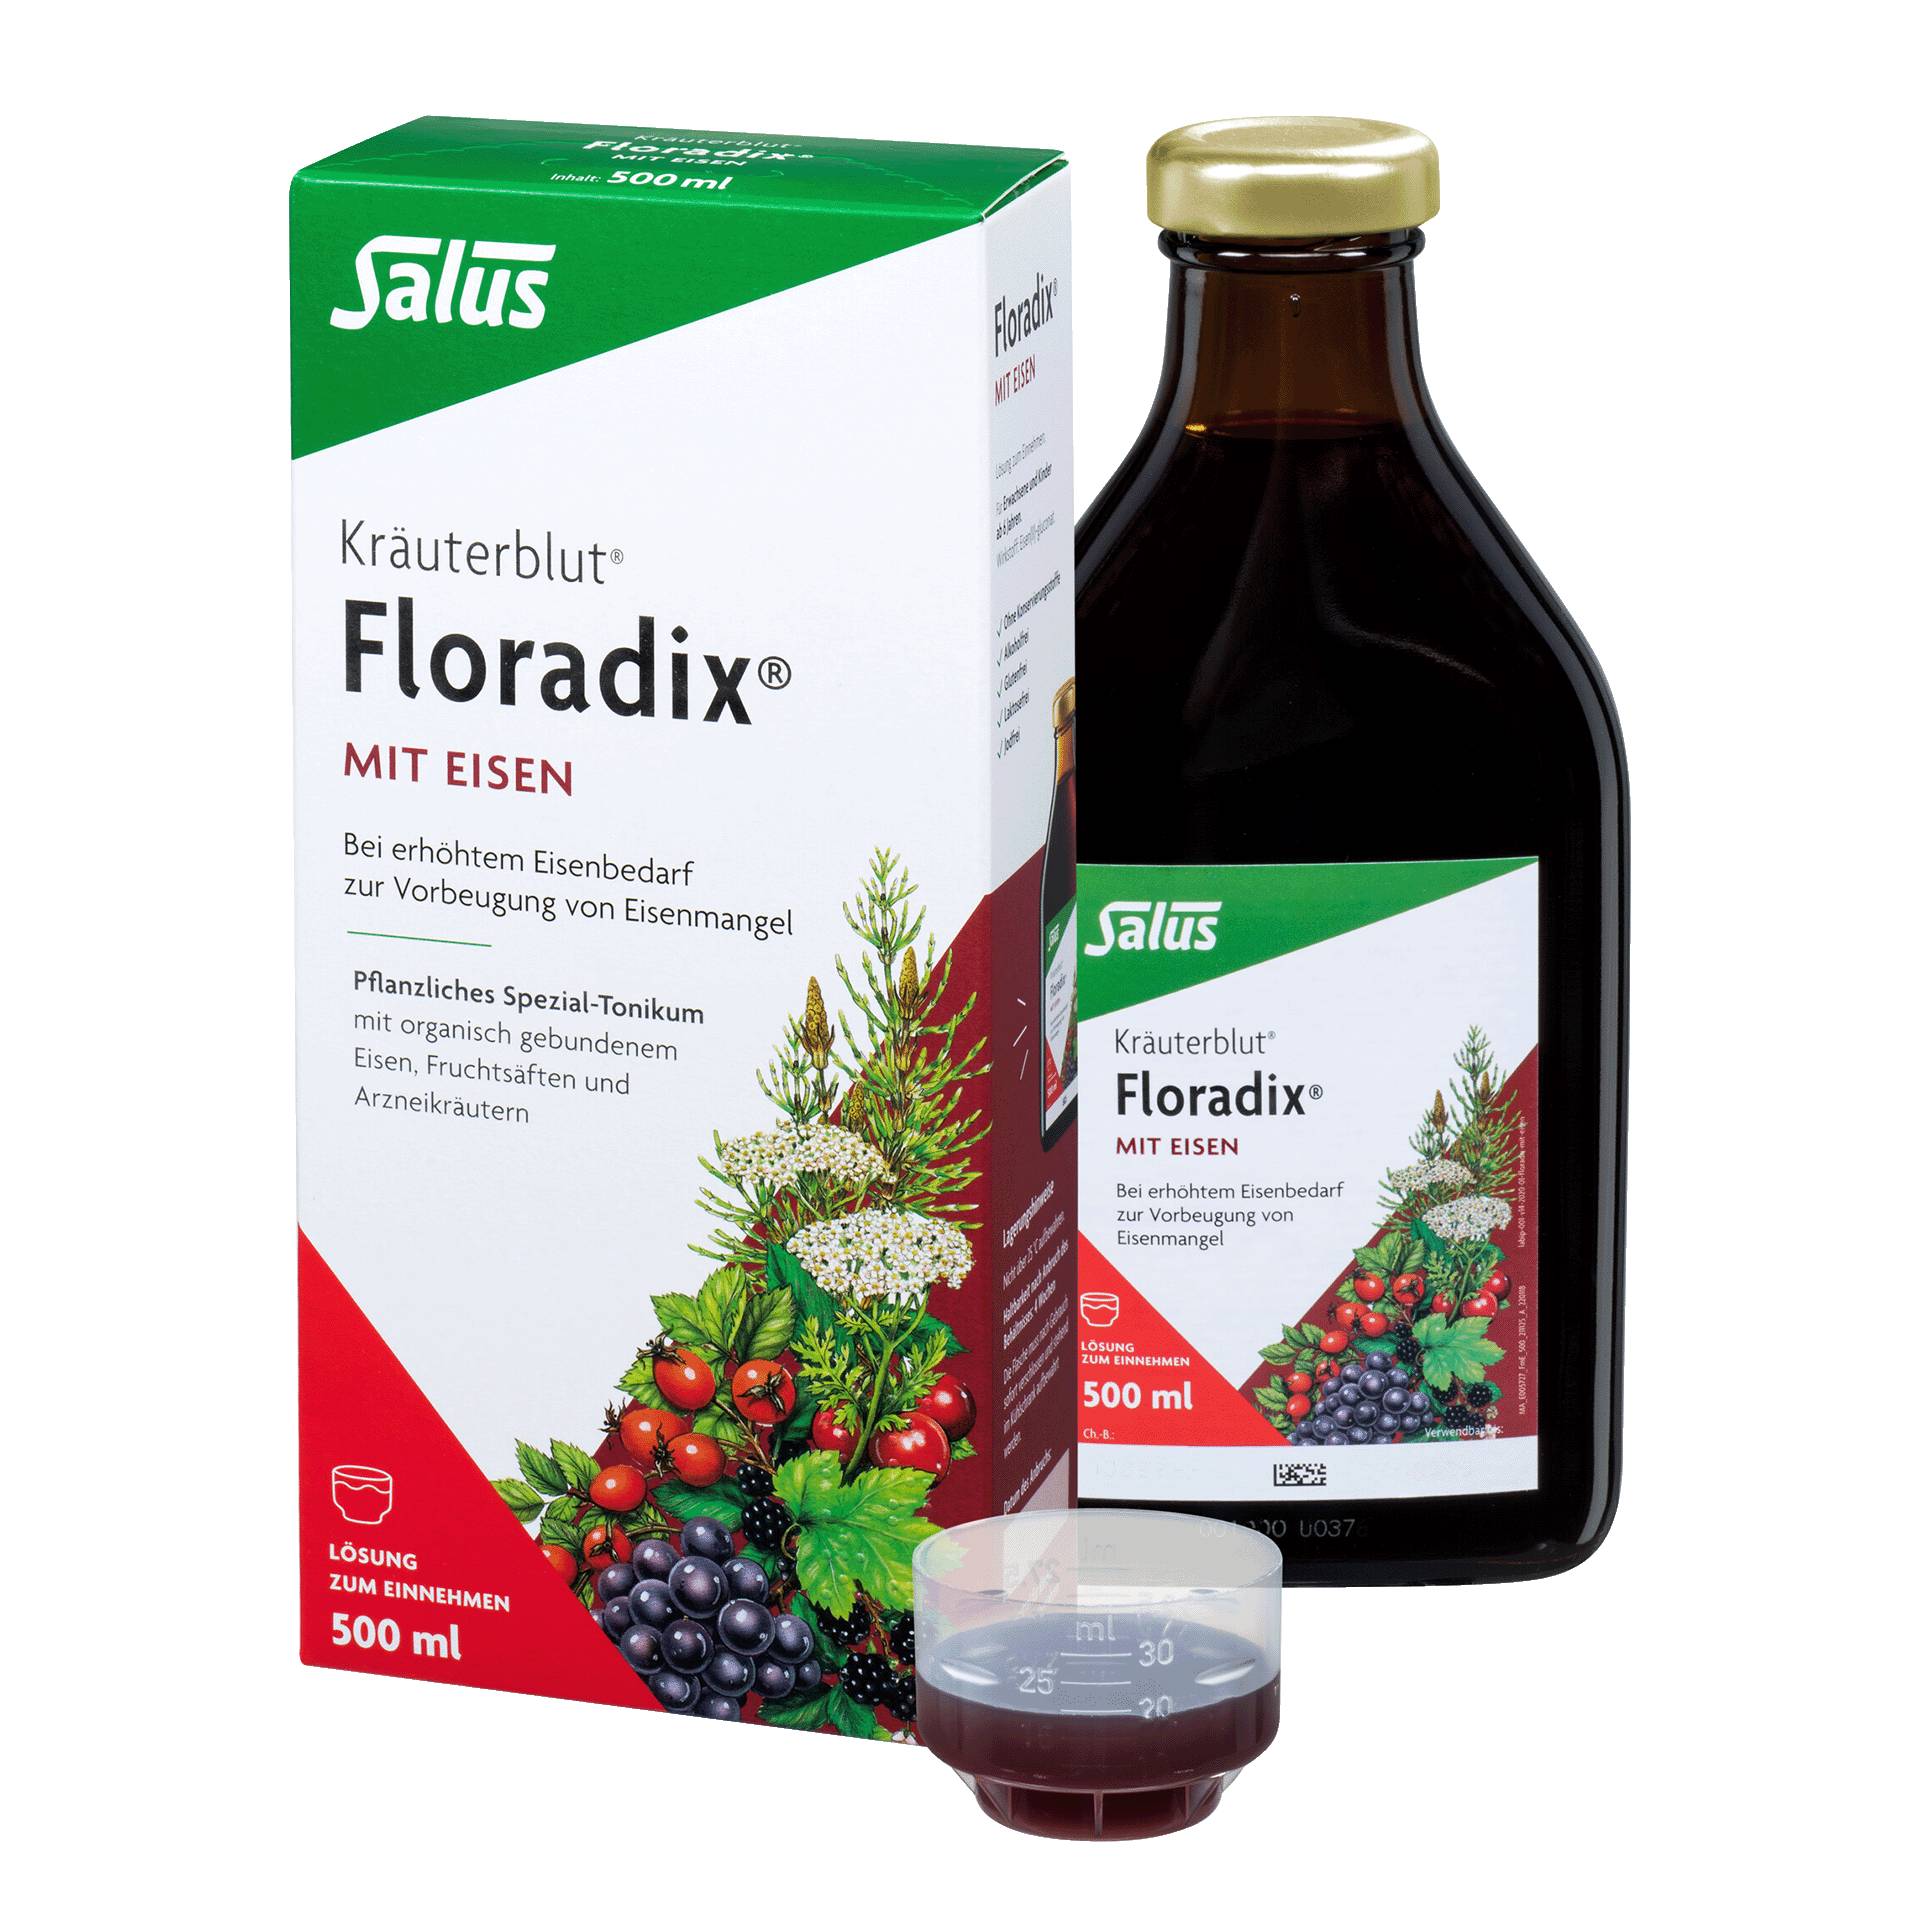 Kräuterblut Floradix mit Eisen, 500 ml von Salus